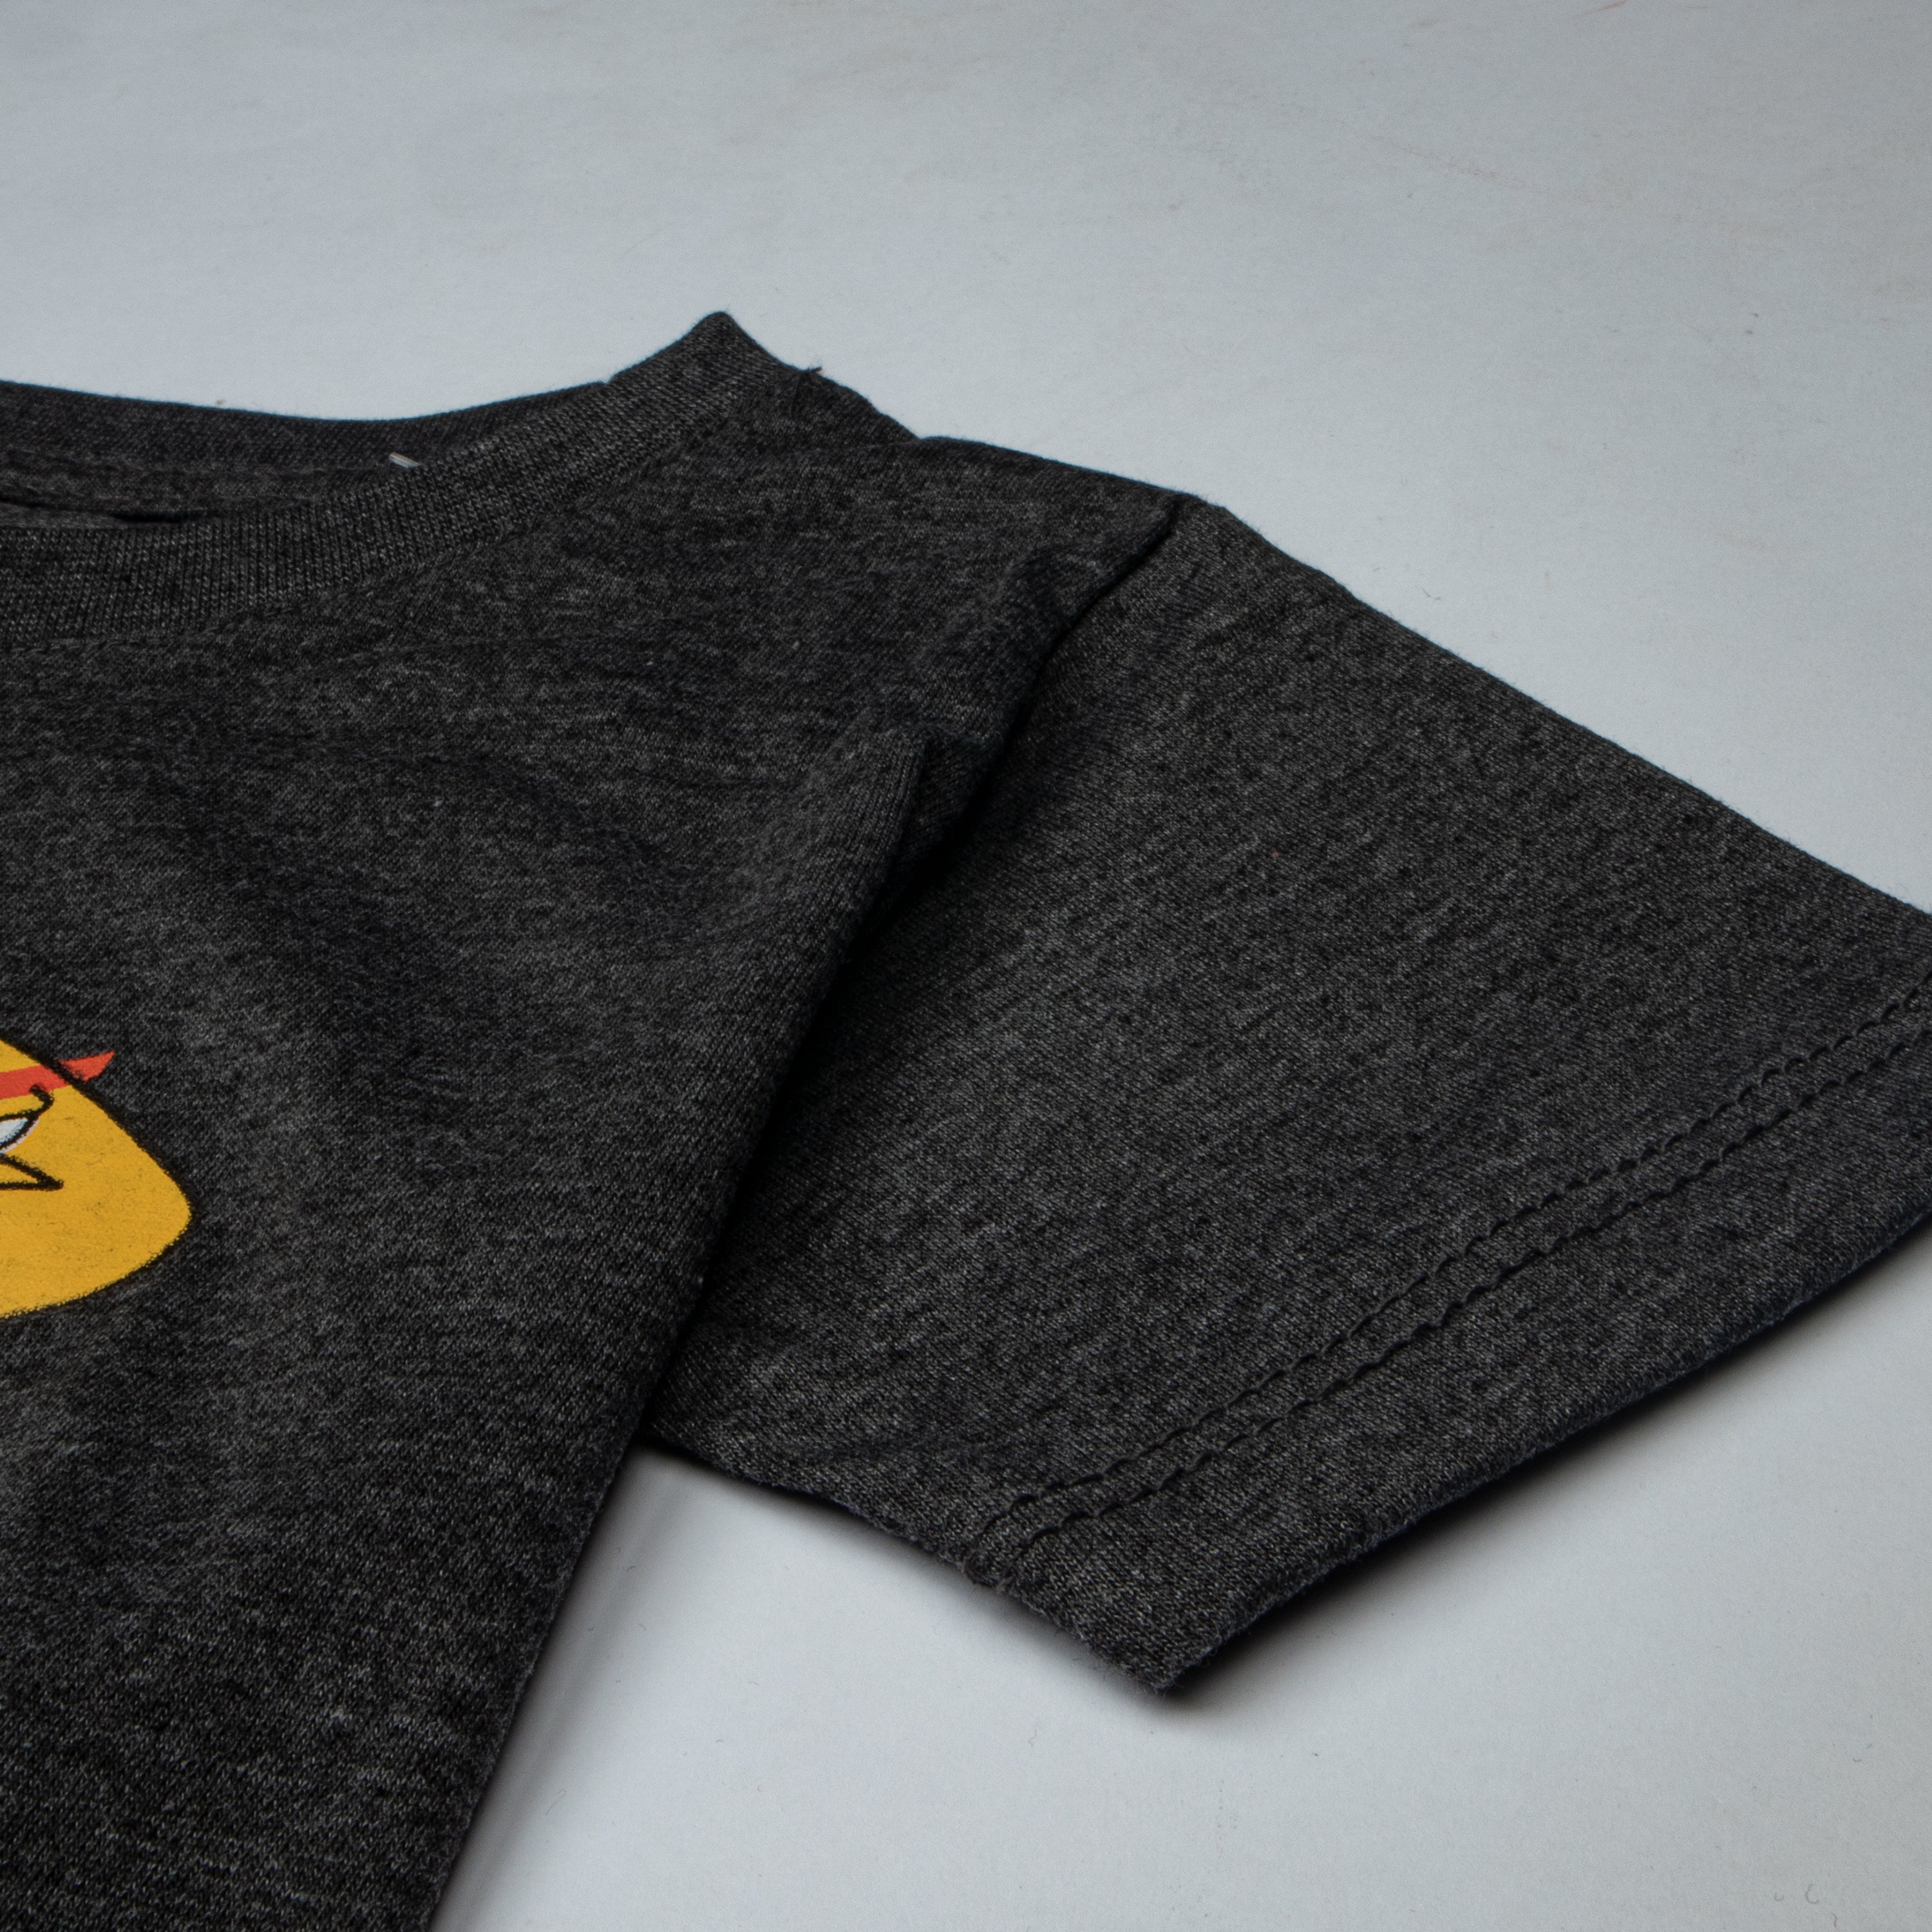 Boys Half Sleeves-Printed T-Shirt Charcoal (Angry-Bird)